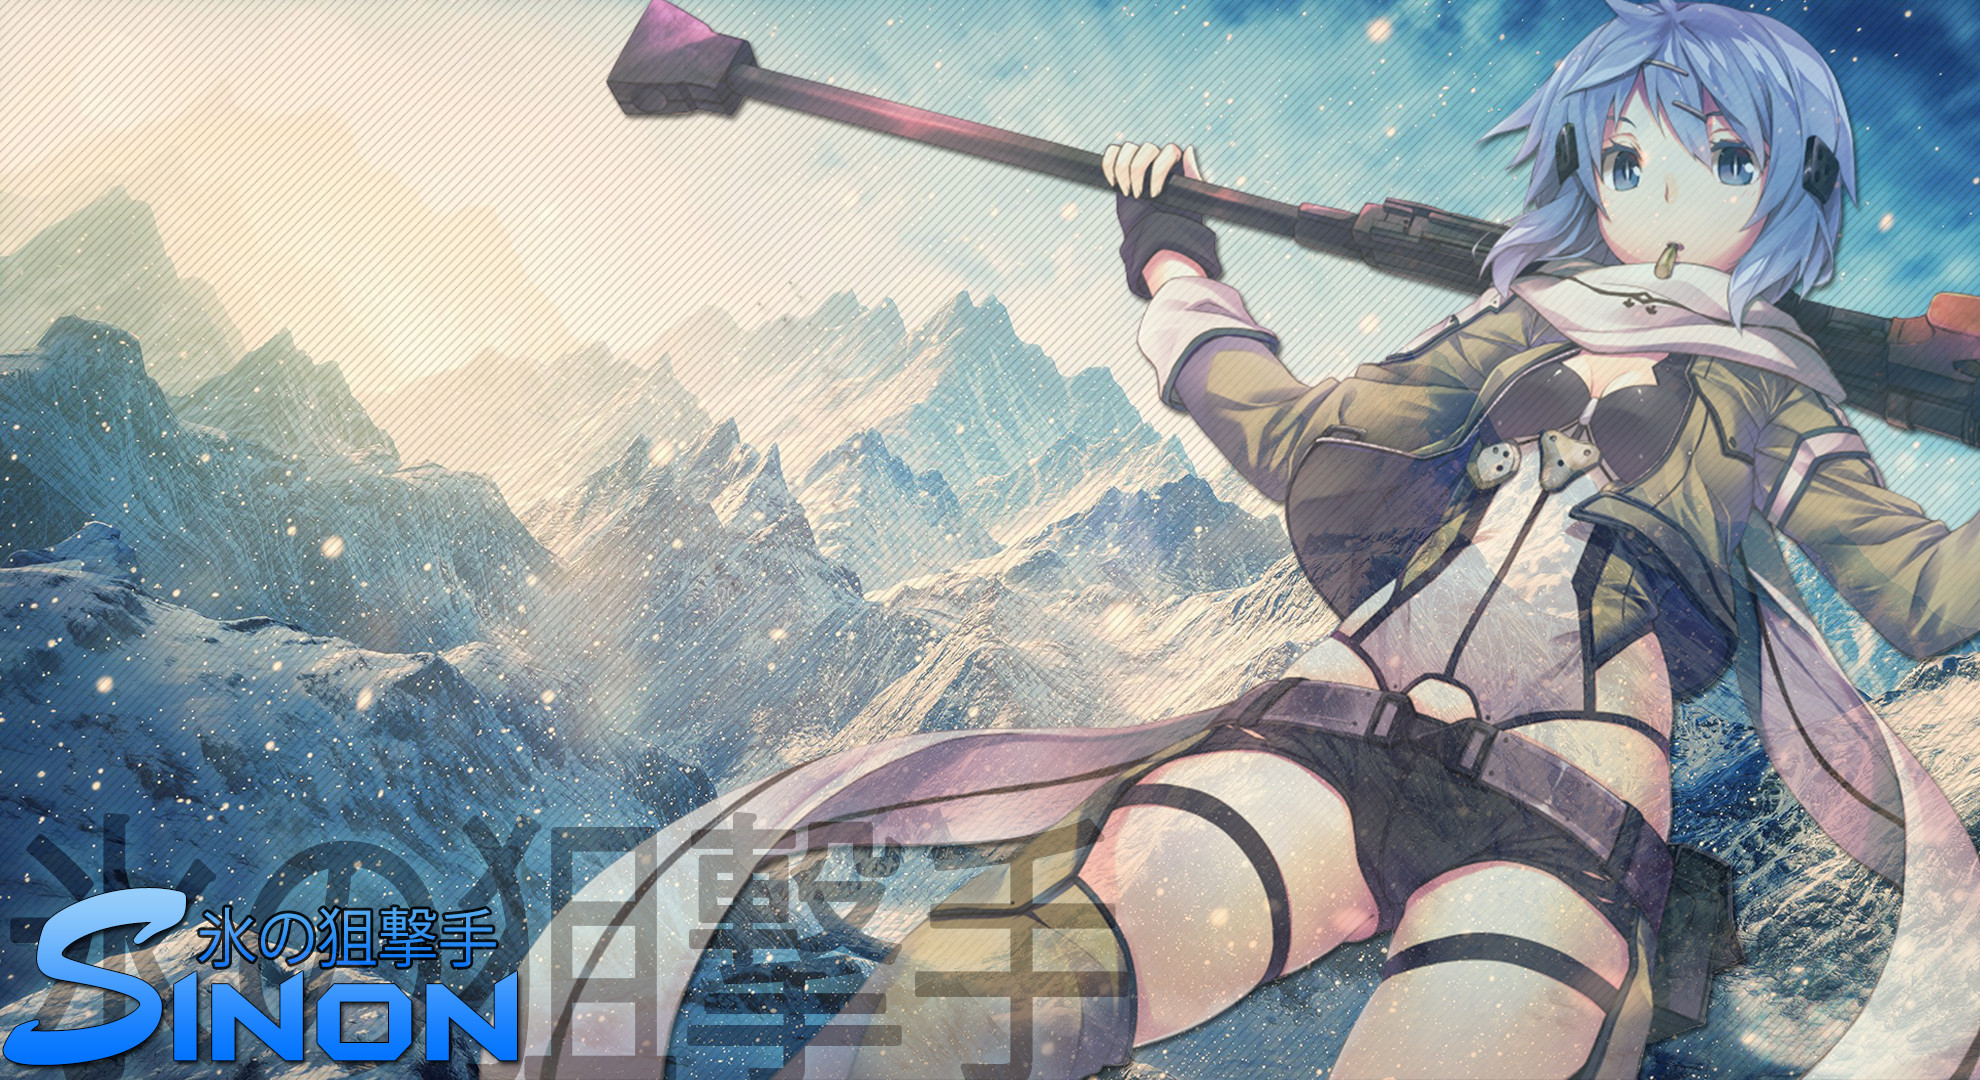 1980x1080 356 Sinon (Sword Art Online) HD Wallpapers | Backgrounds .